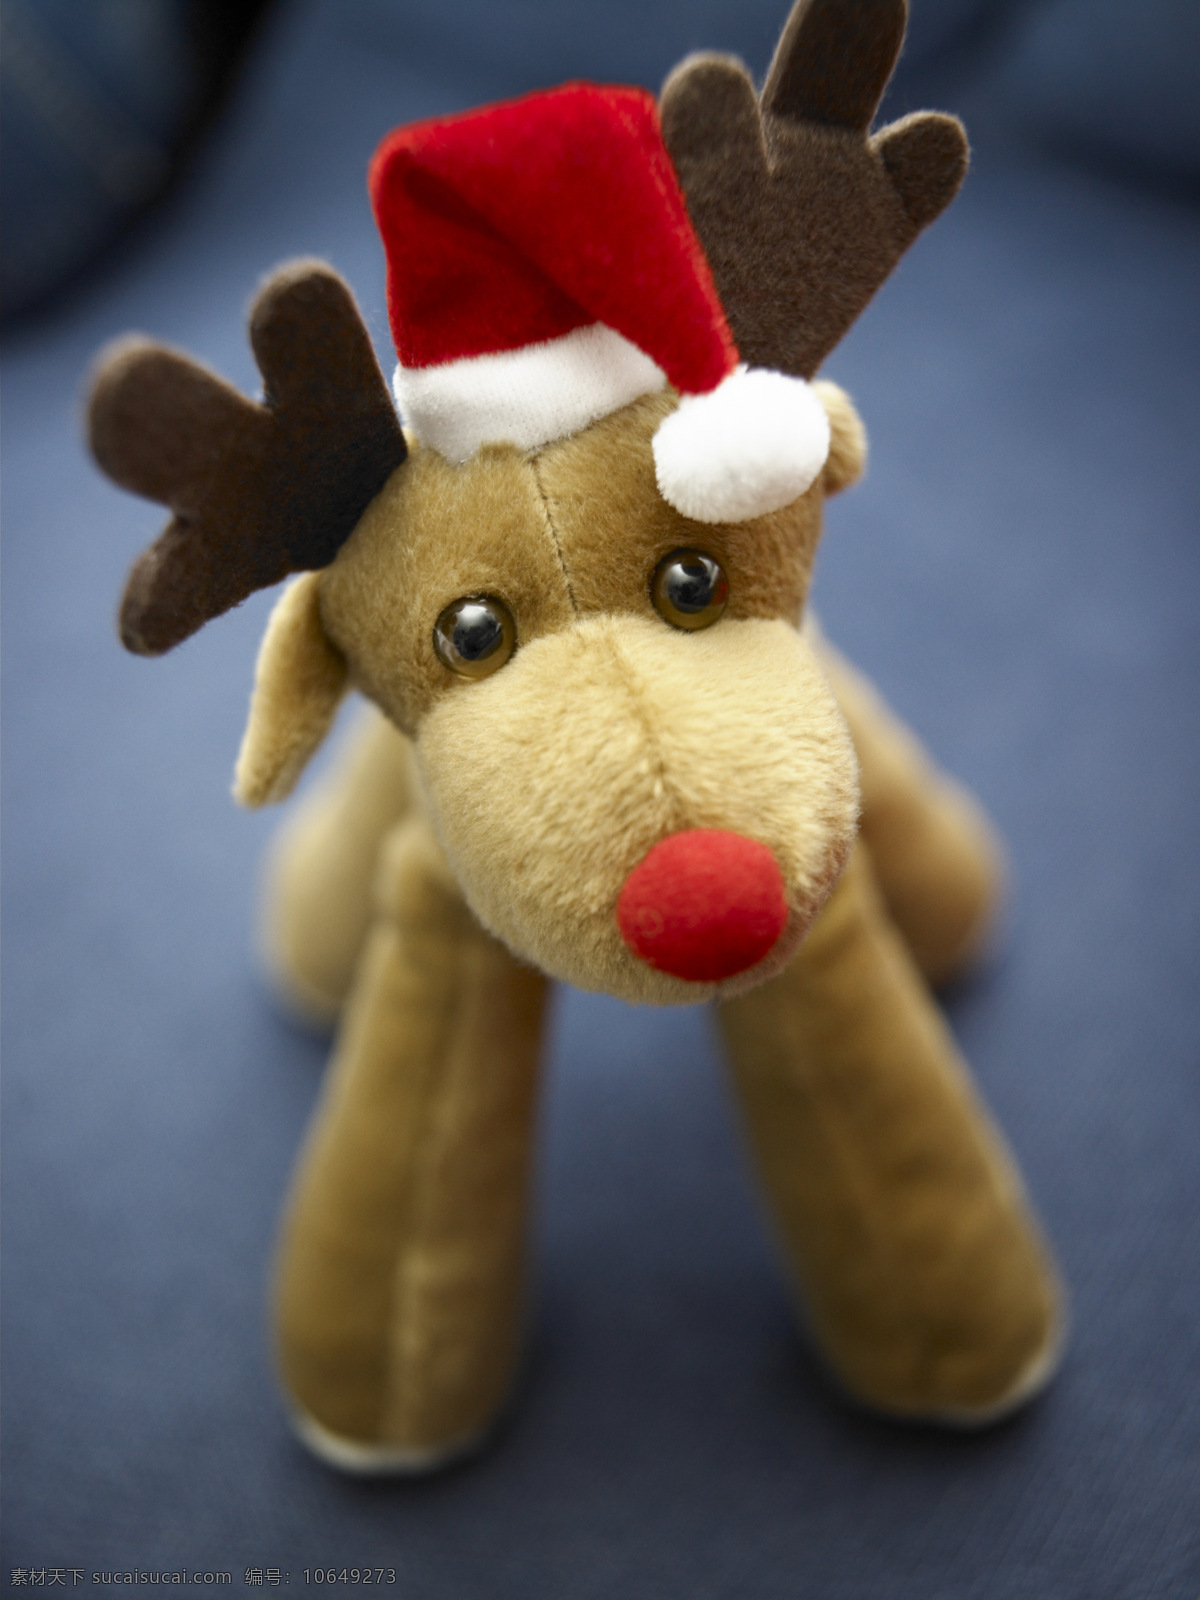 节日庆祝 礼物 鹿 帽子 圣诞 圣诞节 玩具 文化艺术 psd源文件